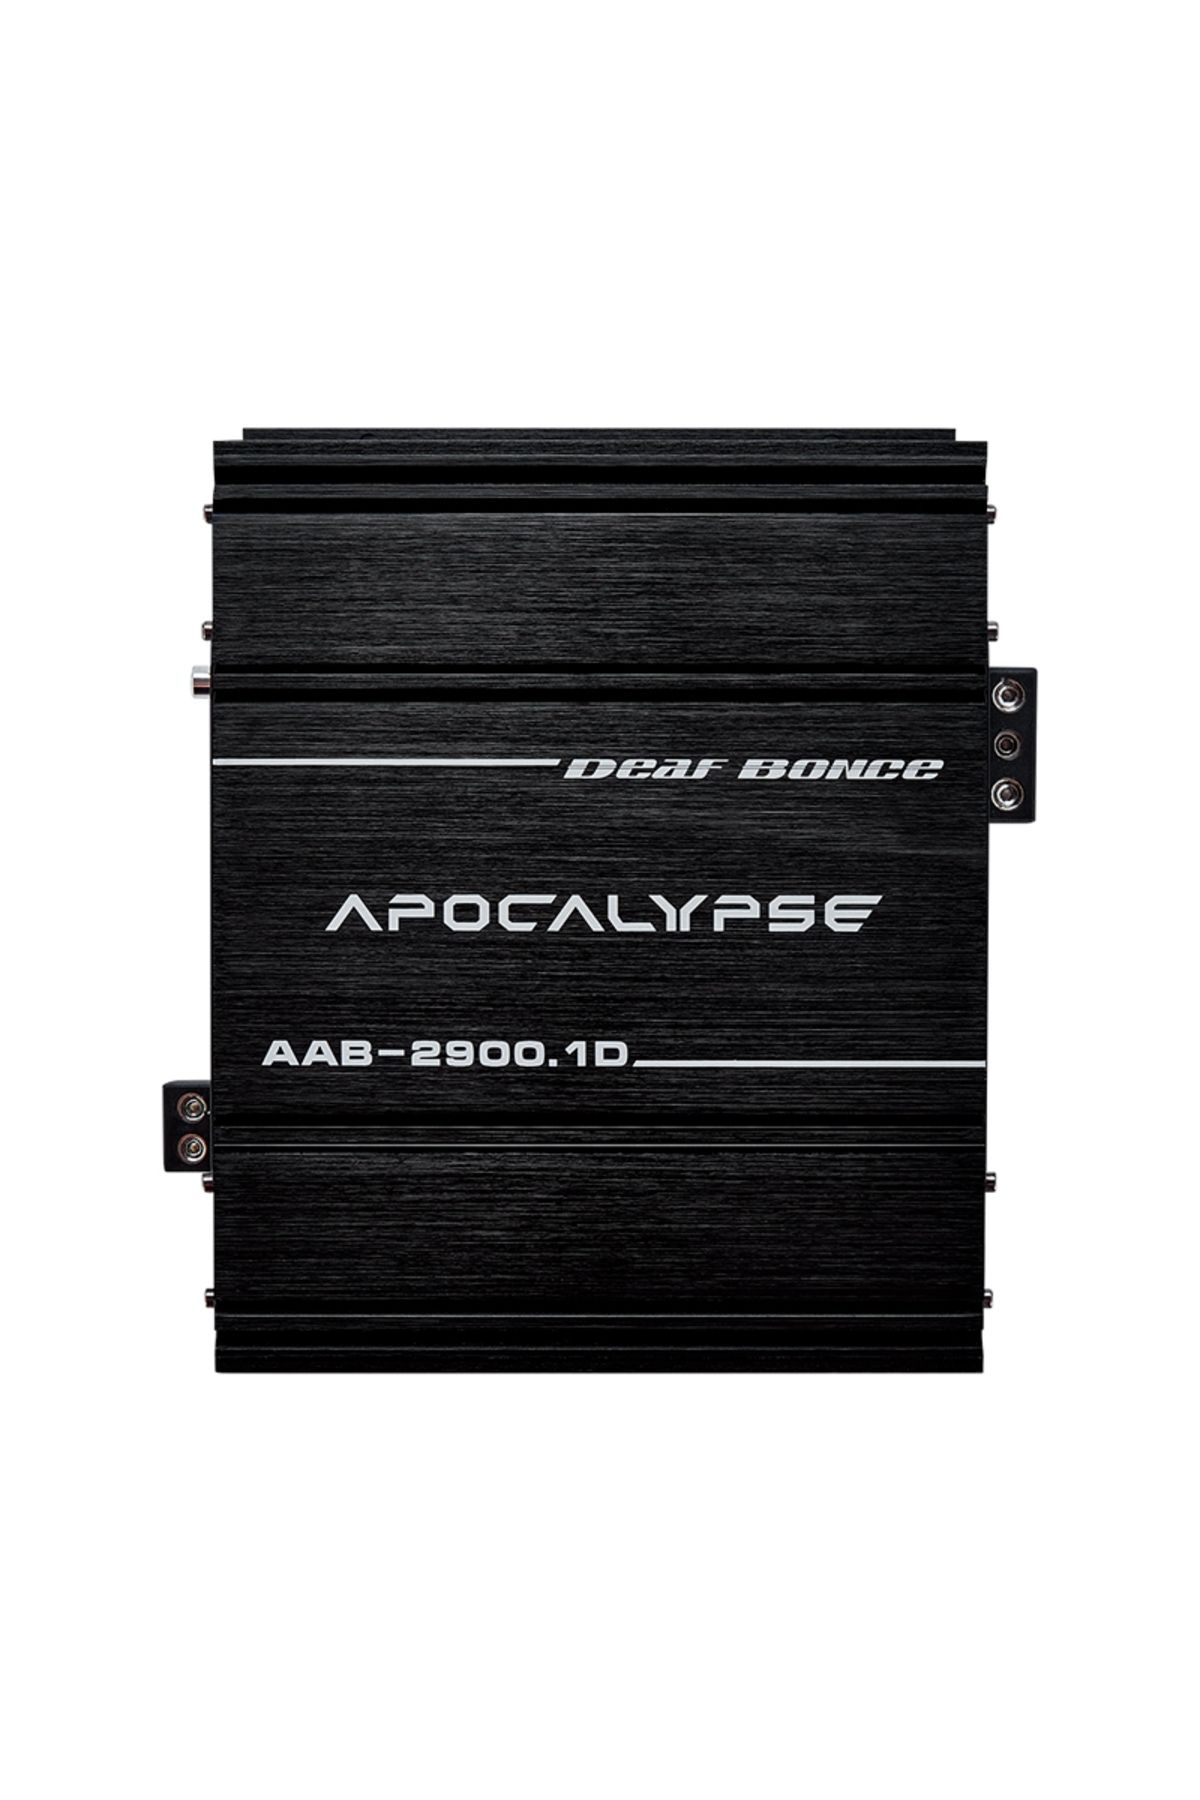 DB DEAF BONCE APOCALYPSE Deaf Bonce Apocalypse Aab-2900.1d 1x3100rms Profesyonel Mono Amfi